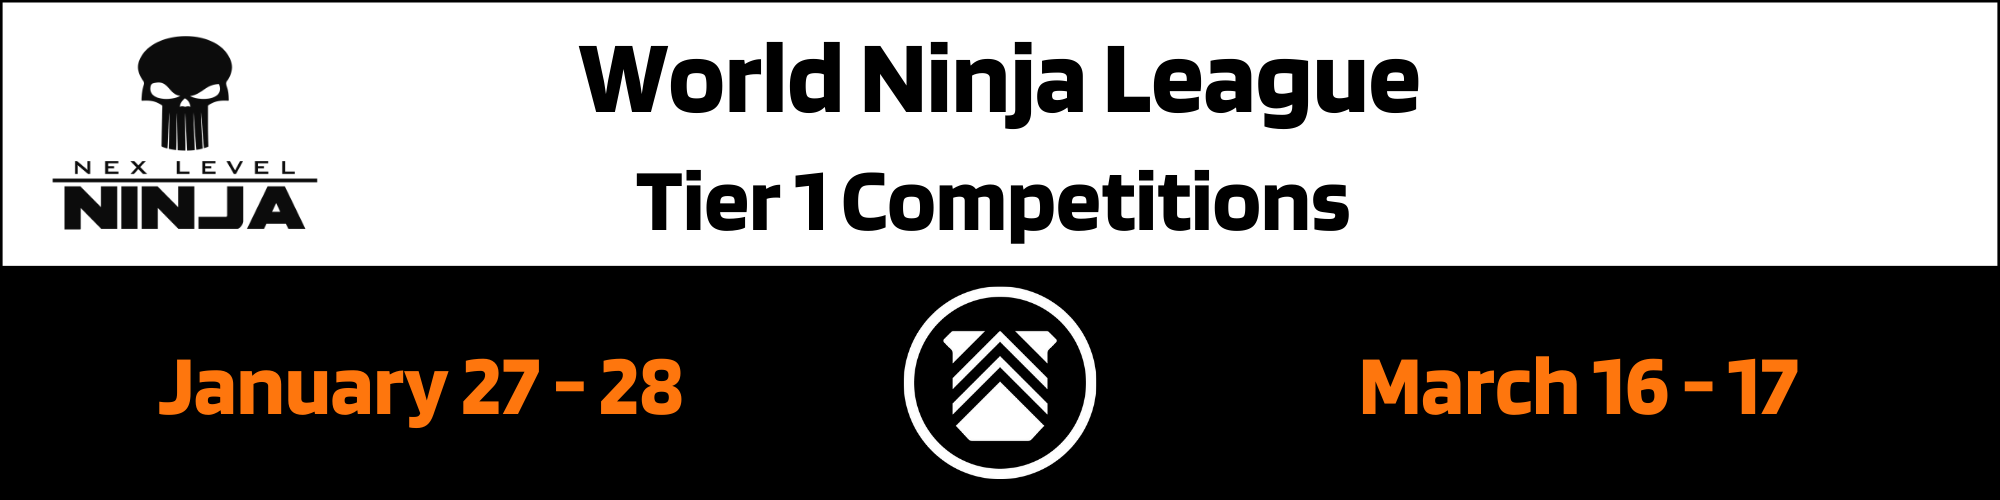 Nex Level Ninja - Home